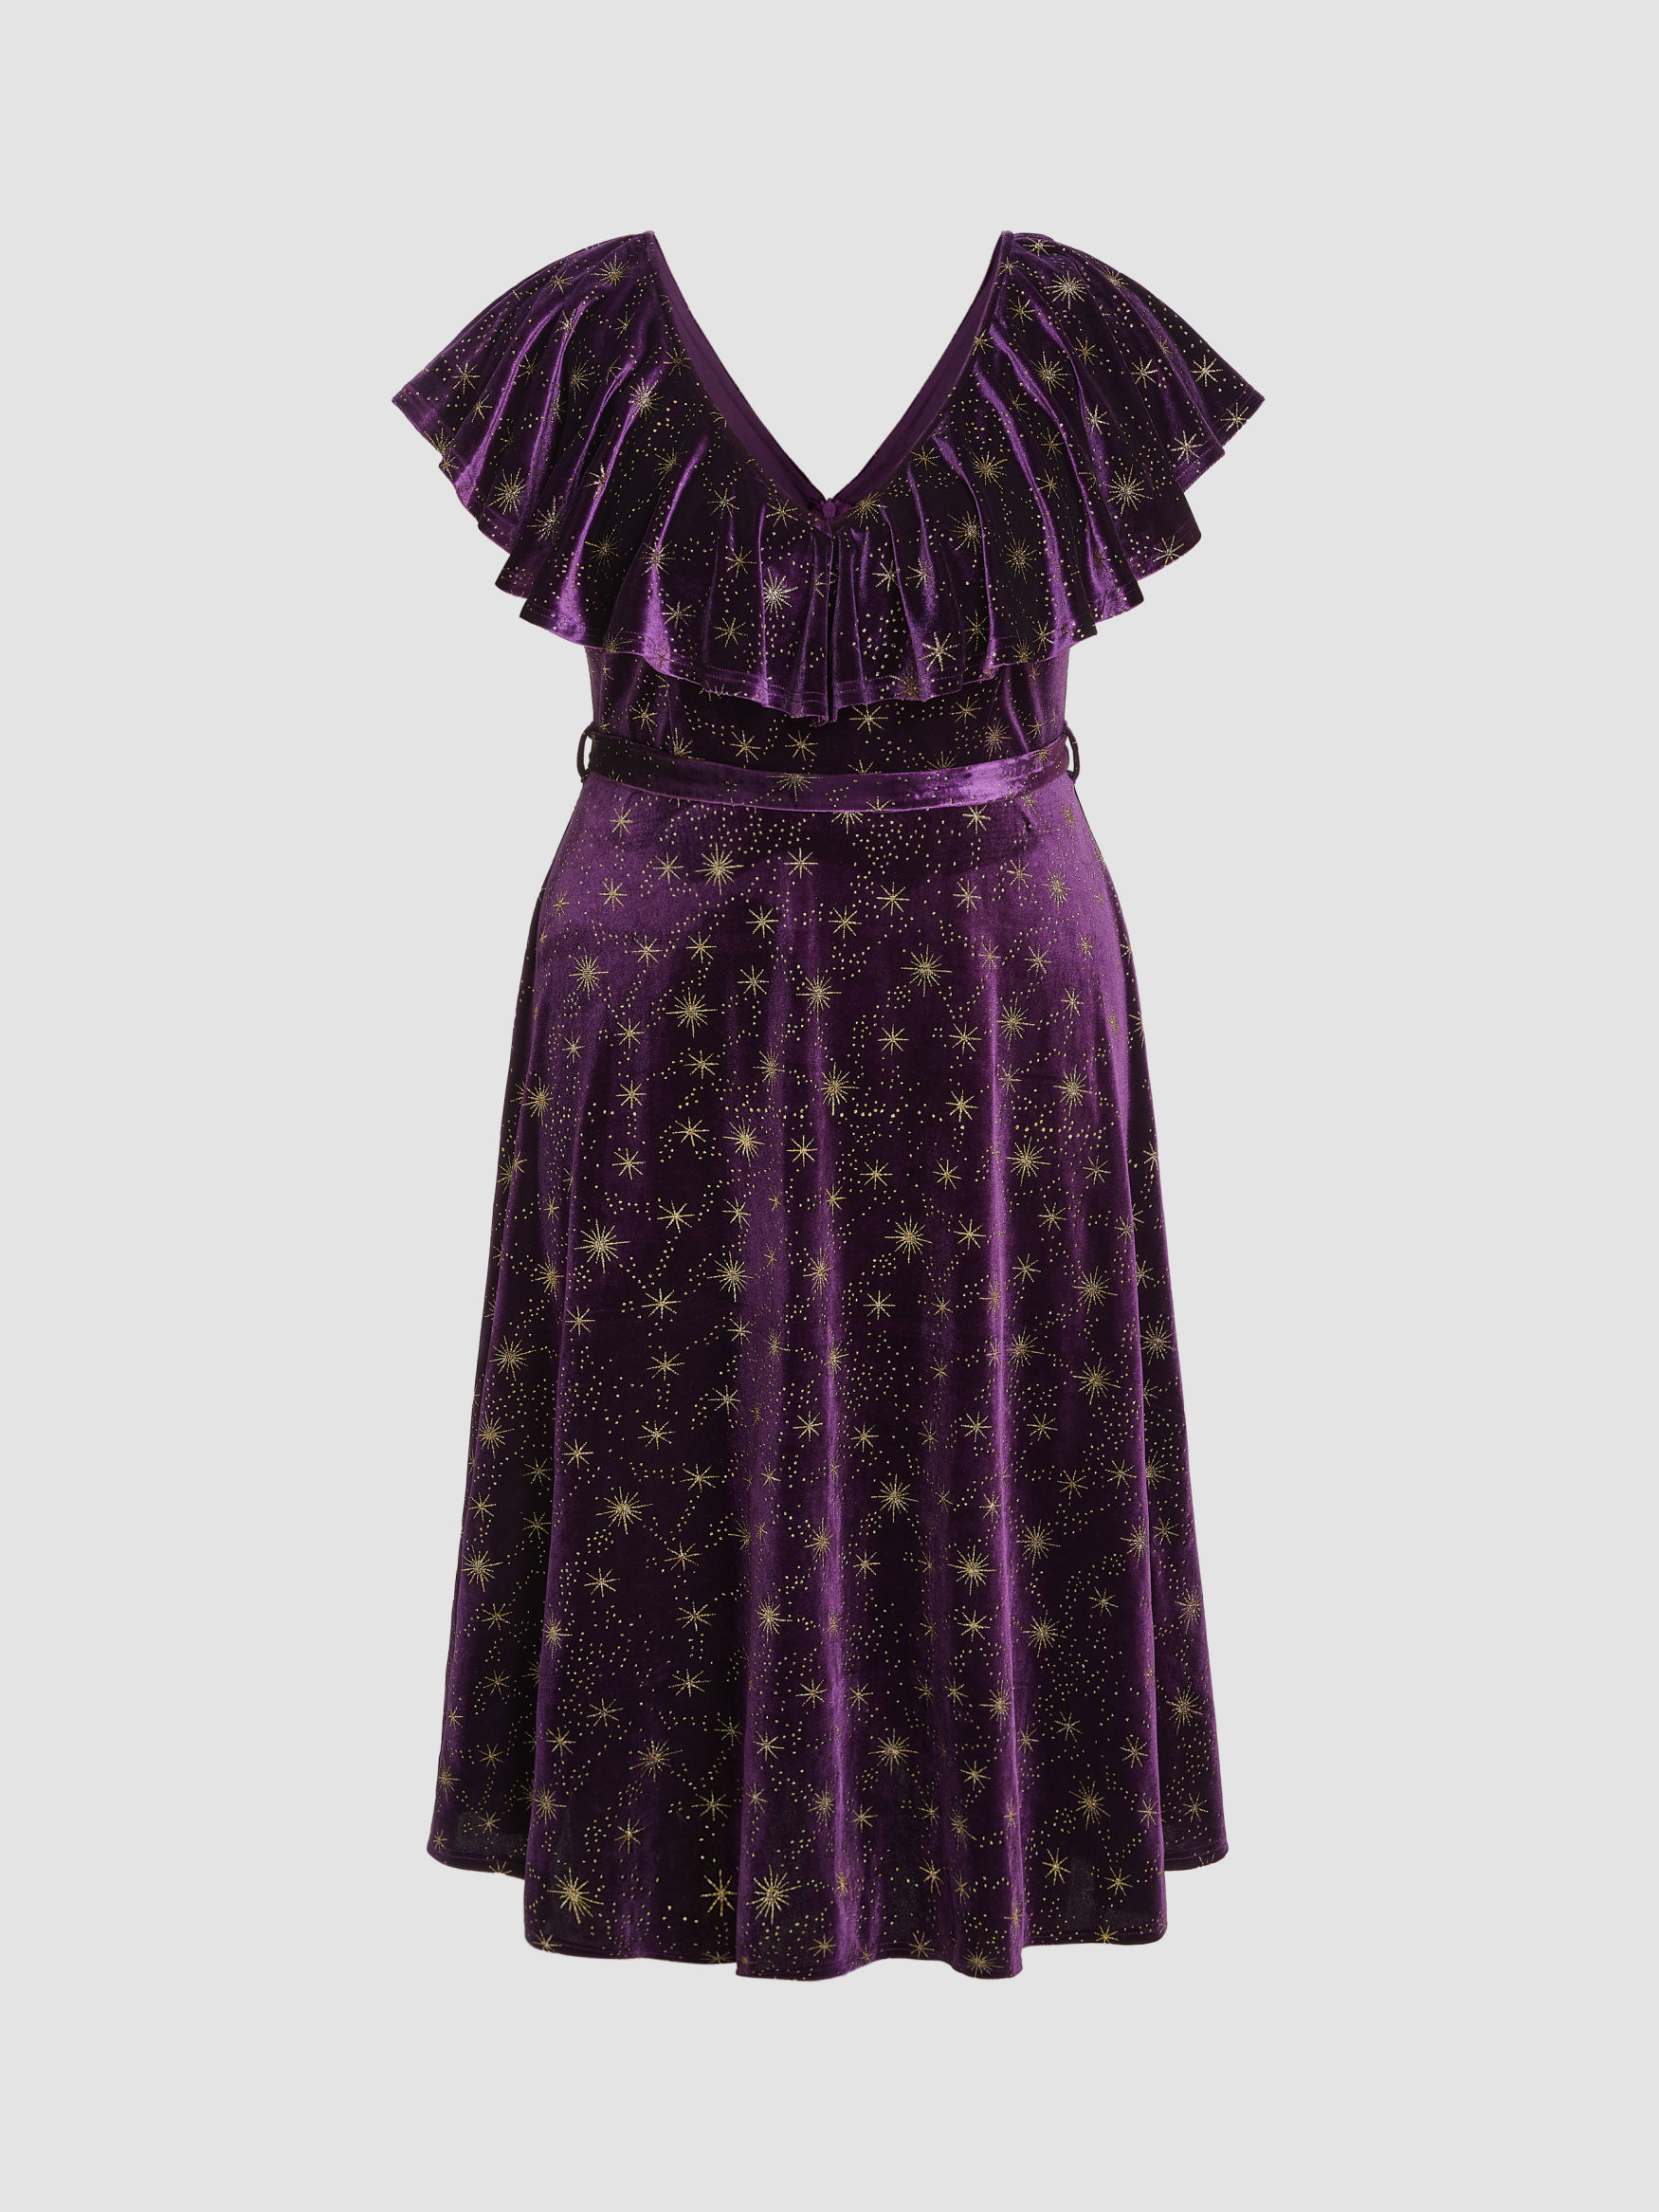 1940s Cocktail Dresses, Party Dresses   AT vintagedancer.com